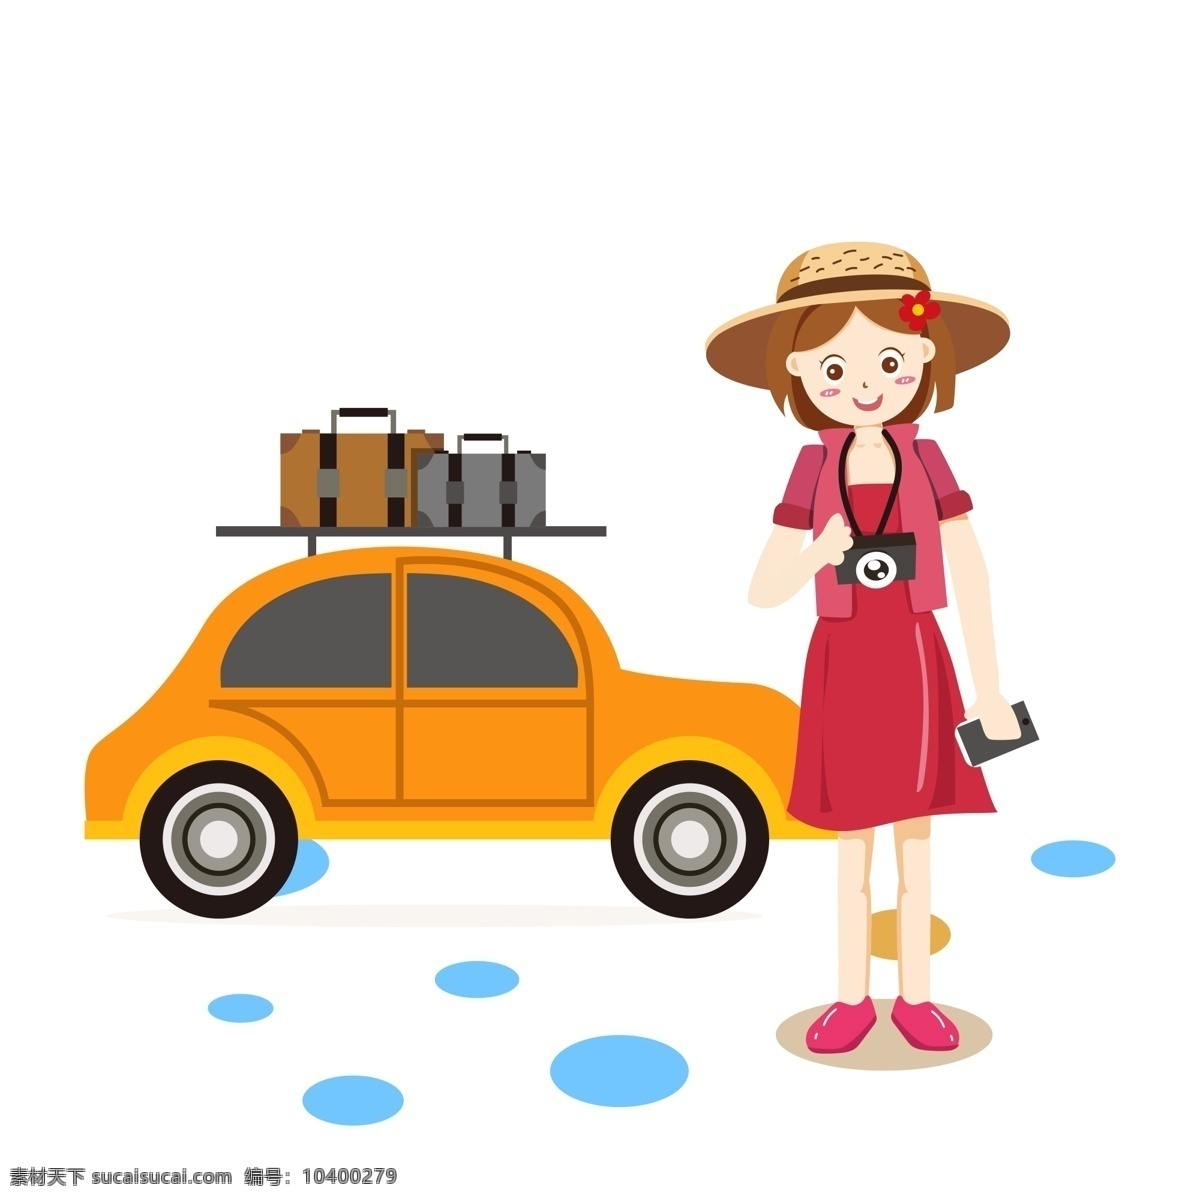 卡通 可爱 旅行 女孩 人物 插画元素 png元素 清新 女孩设计元素 车